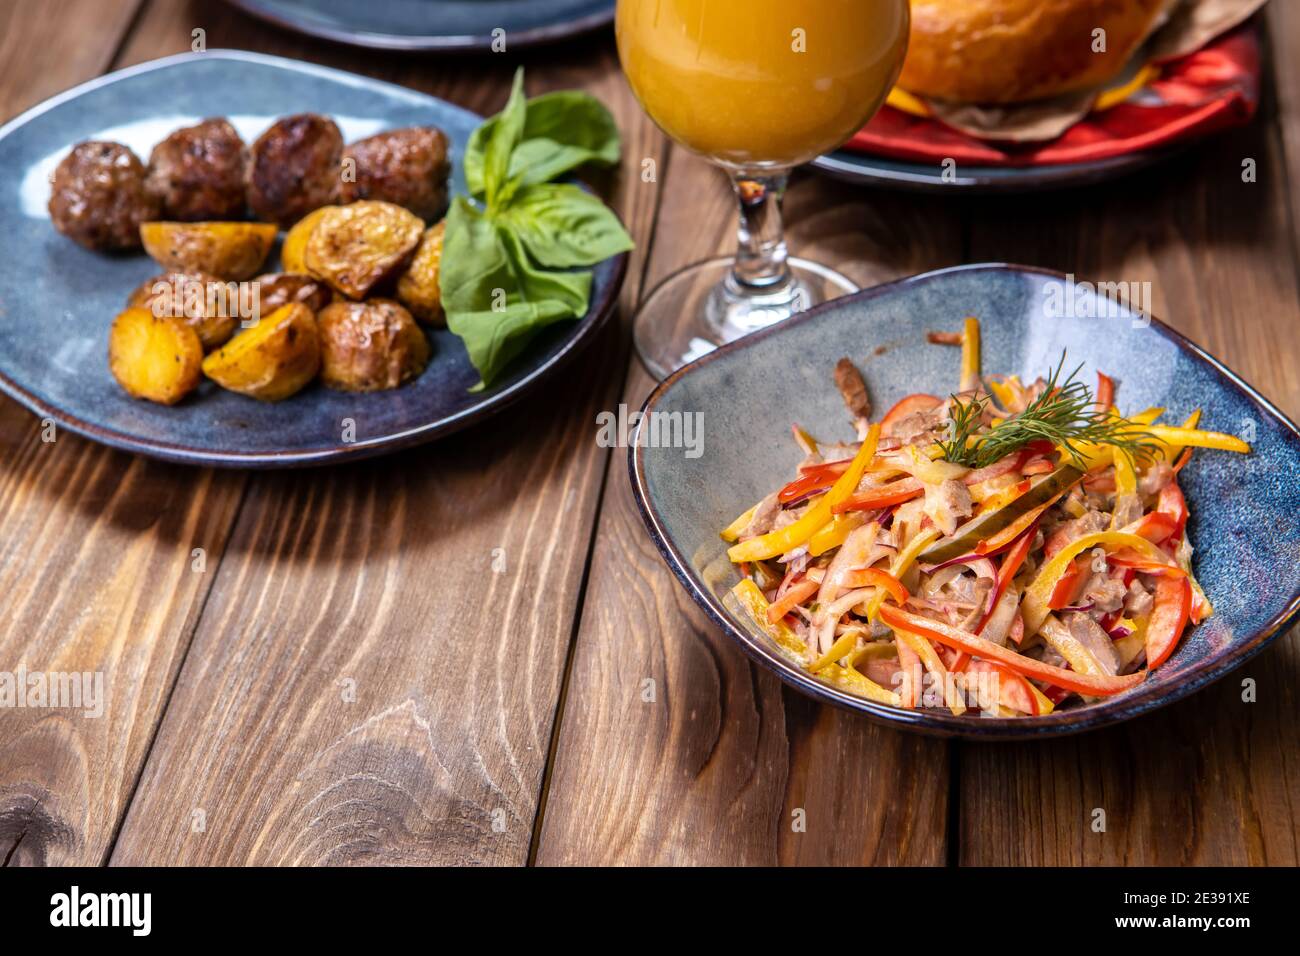 Eine Tasse mit einem Salat aus Gemüse gewürzt mit Sauce, frischem Gebäck, Orangensaft und Bratkartoffeln mit Koteletts auf braunem Holzhintergrund. Stockfoto